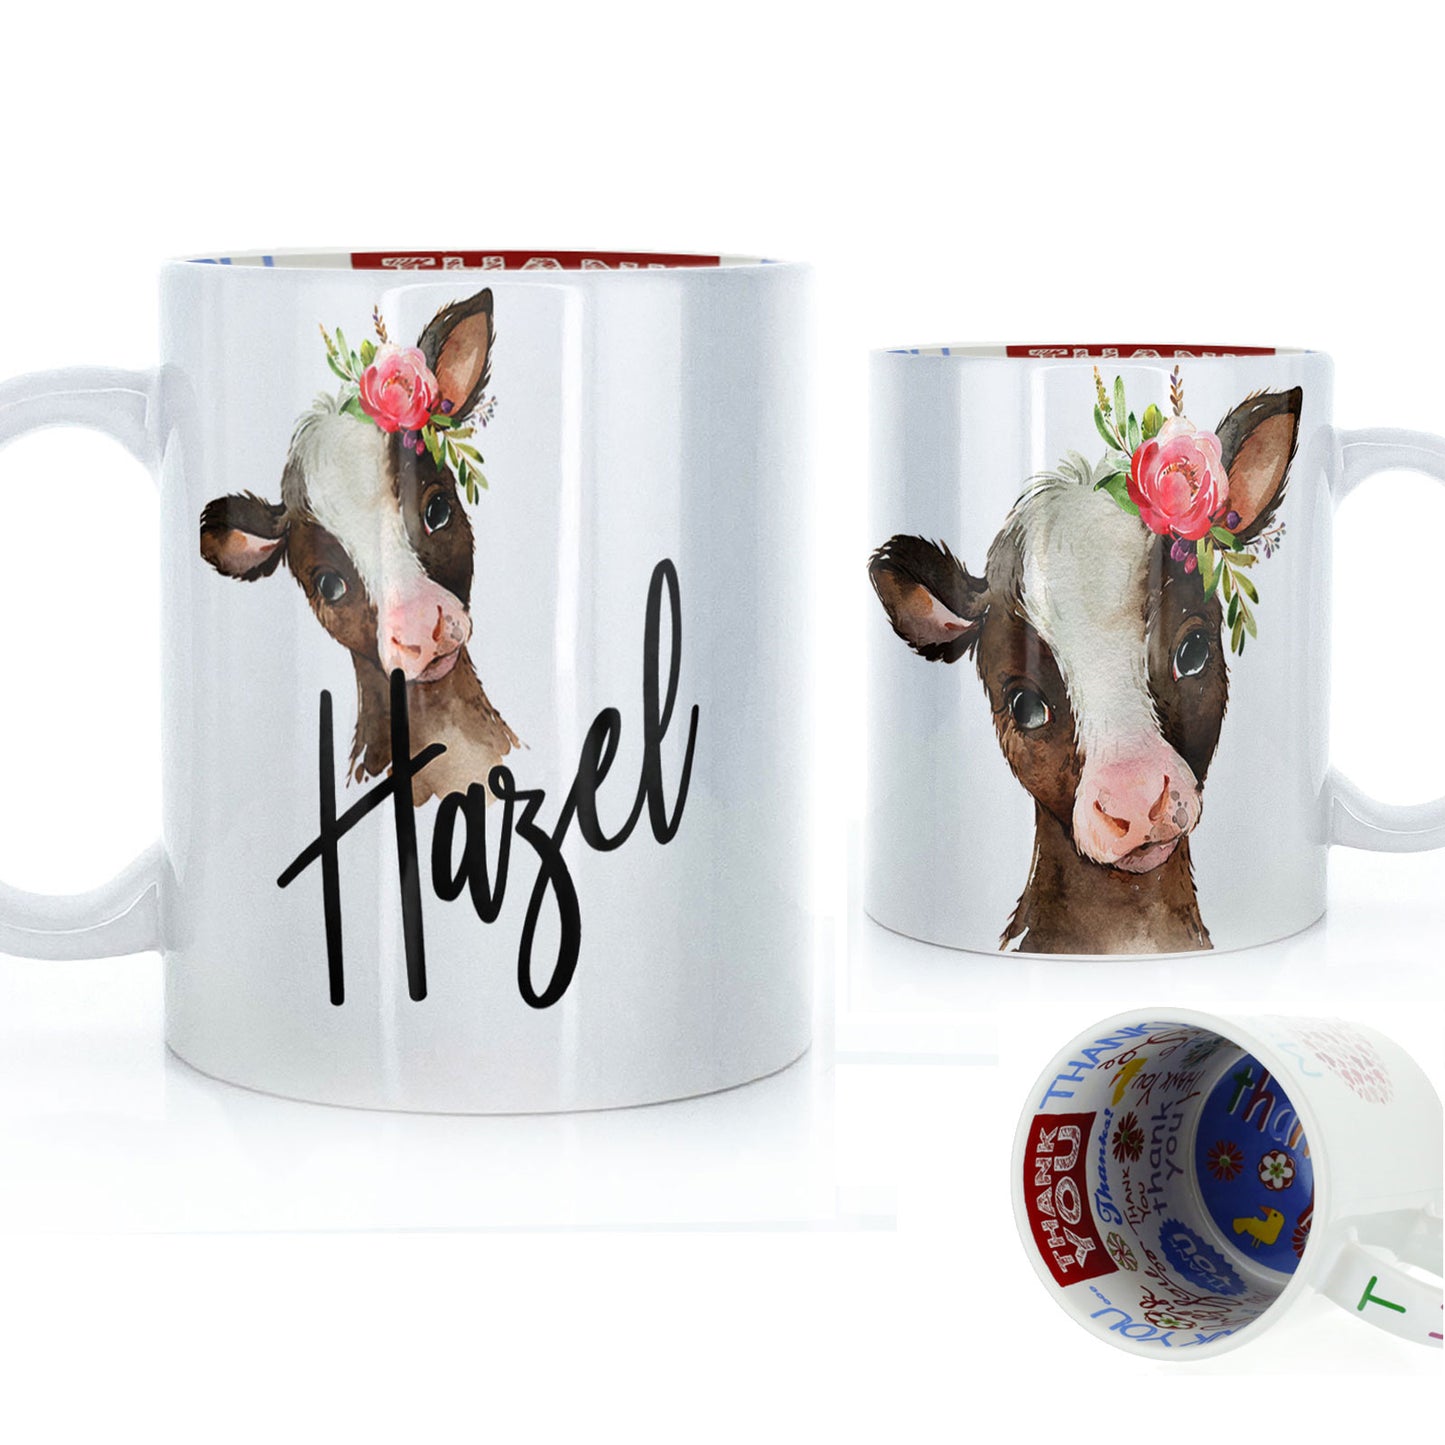 Personalisierte Tasse mit stilvollem Text und rosa Blume, brauner Kuh